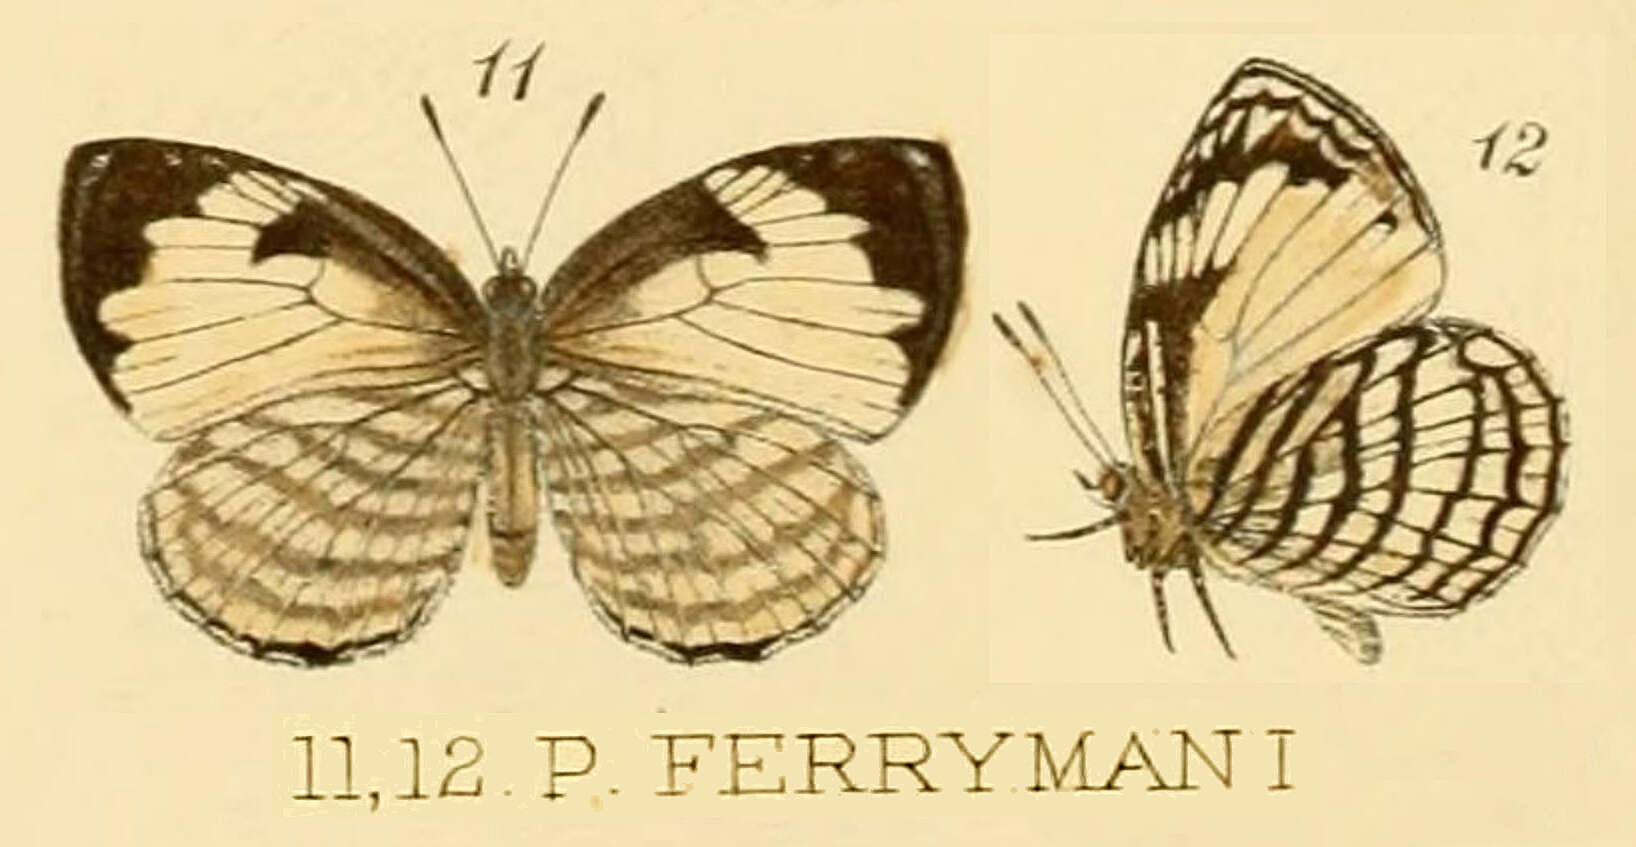 Image of Liptena ferrymani (Smith & Kirby 1891)